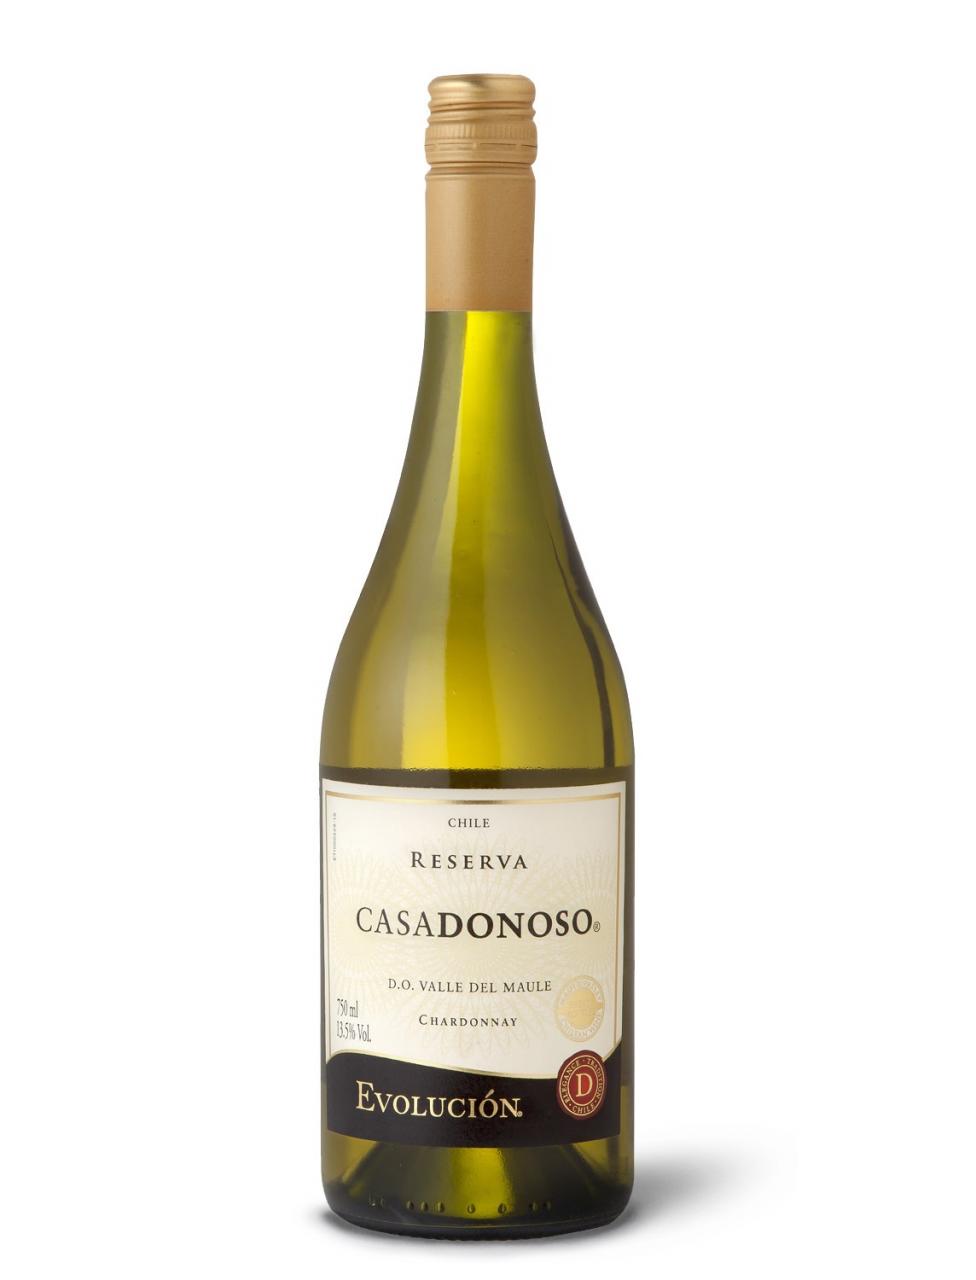 Vang Chile Casadonoso Reserva Chardonnay